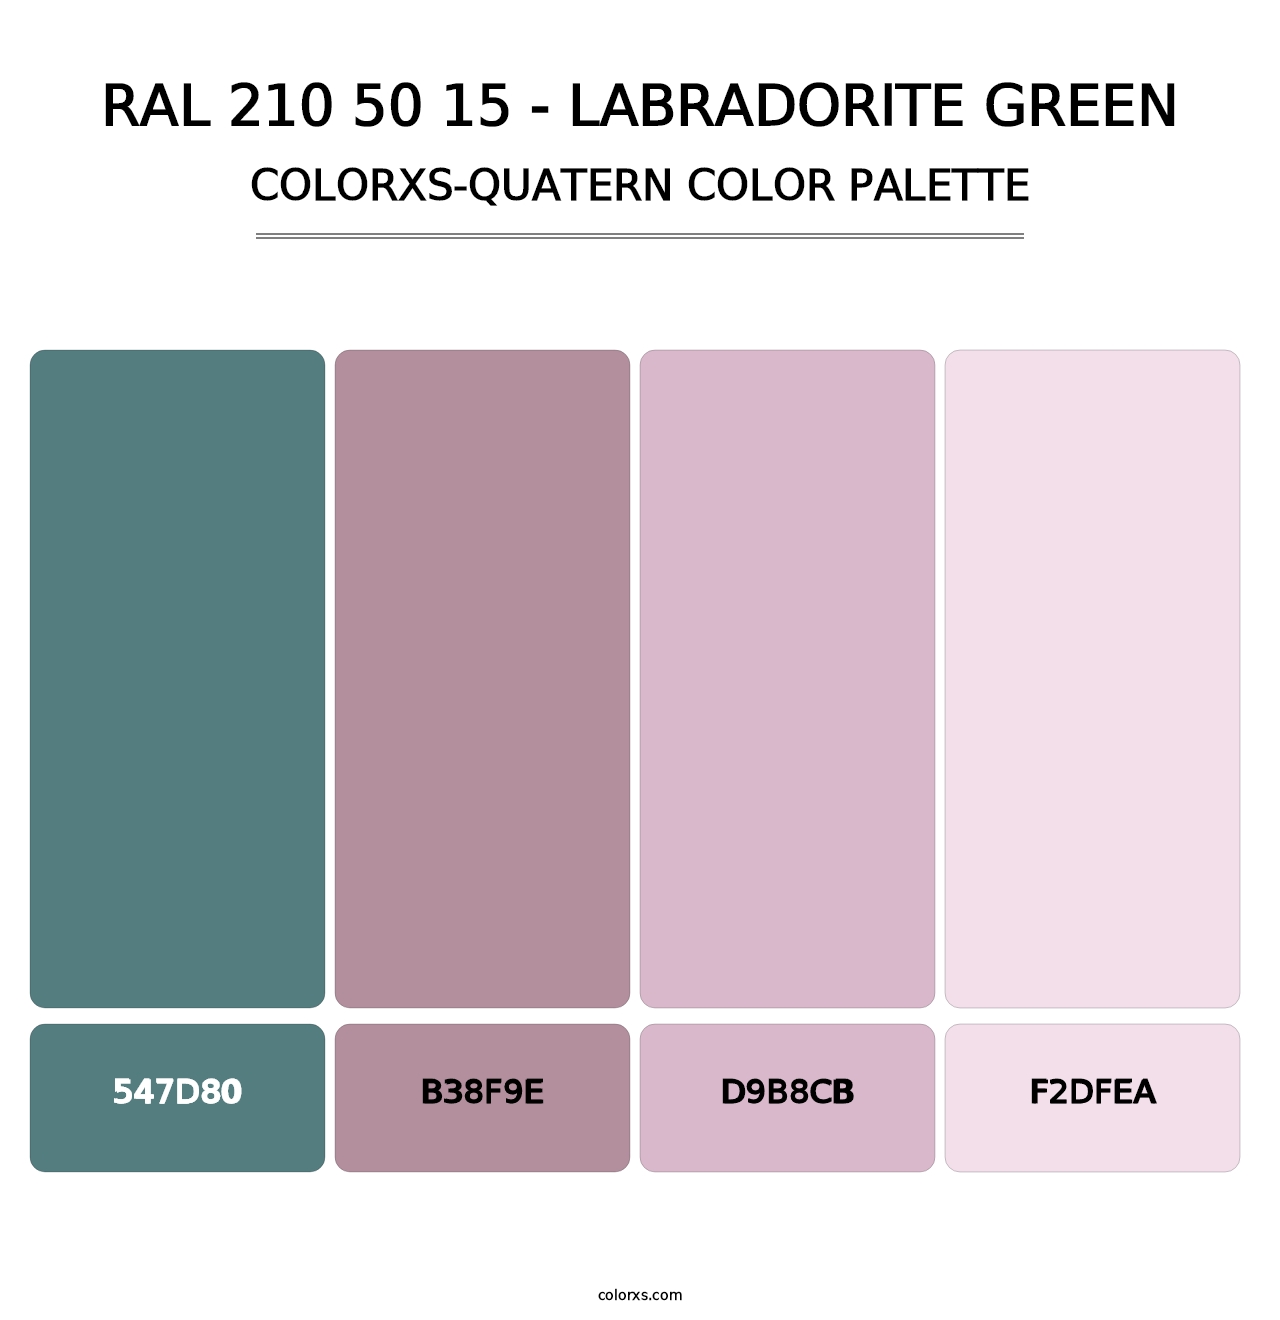 RAL 210 50 15 - Labradorite Green - Colorxs Quatern Palette